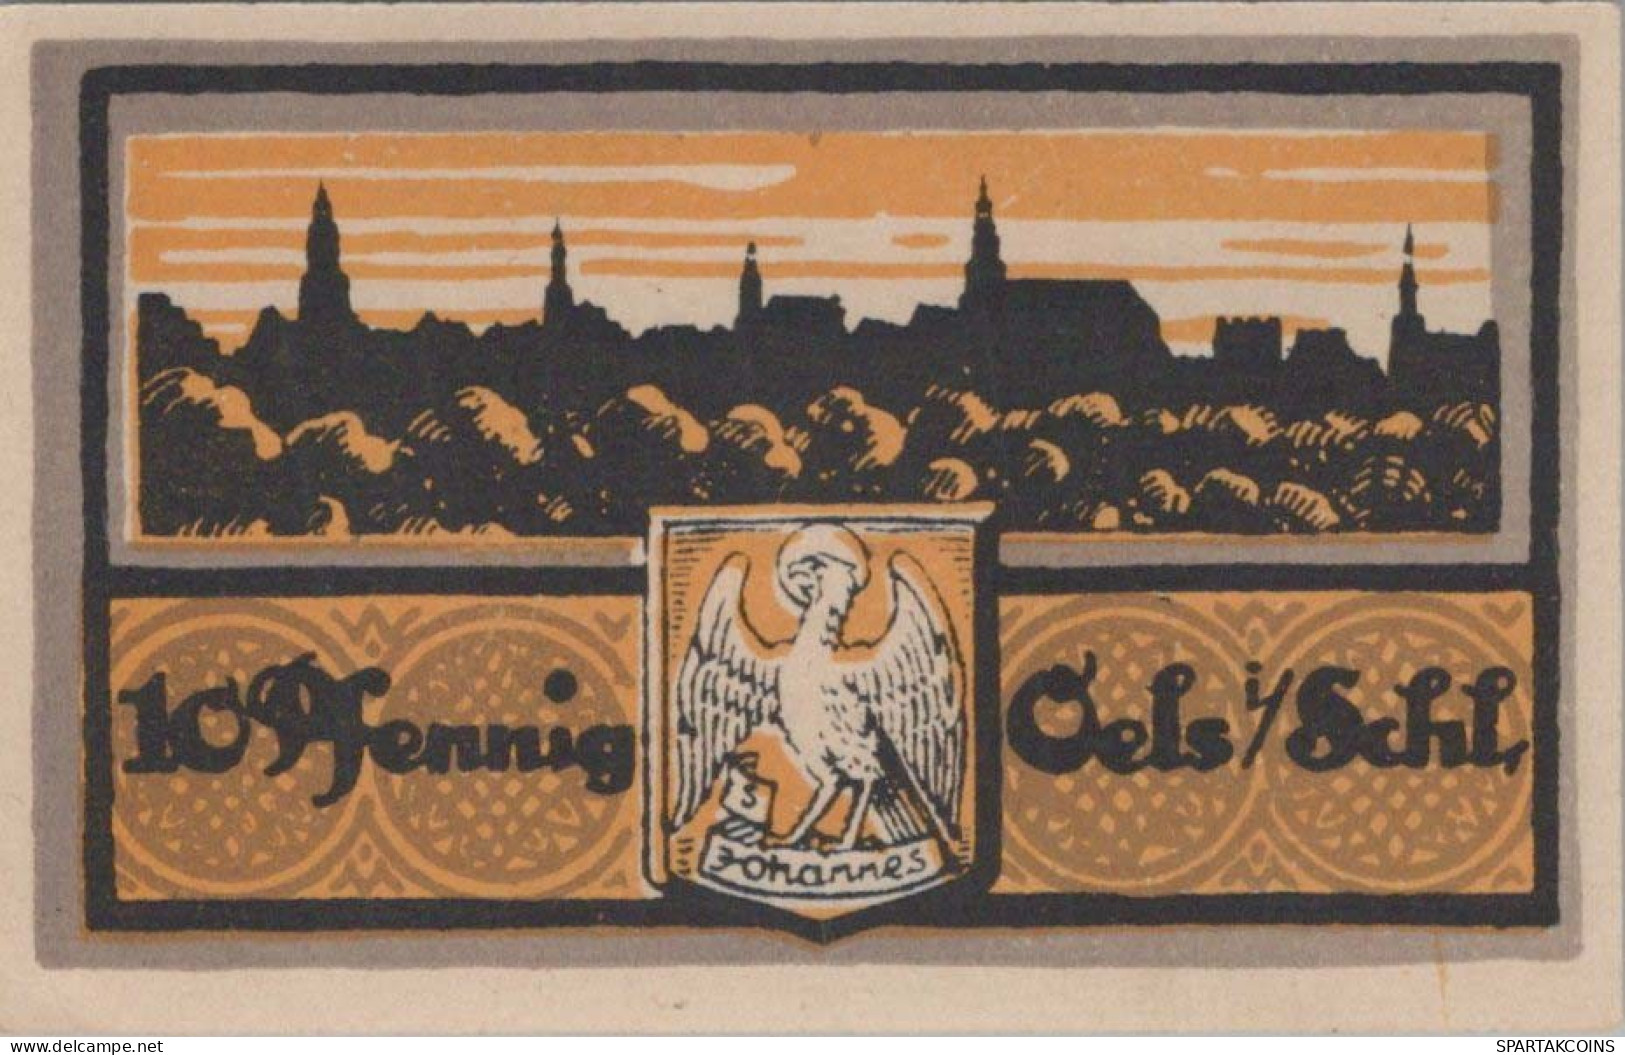 10 PFENNIG 1921 Stadt OELS Niedrigeren Silesia UNC DEUTSCHLAND Notgeld Banknote #PJ059 - [11] Local Banknote Issues